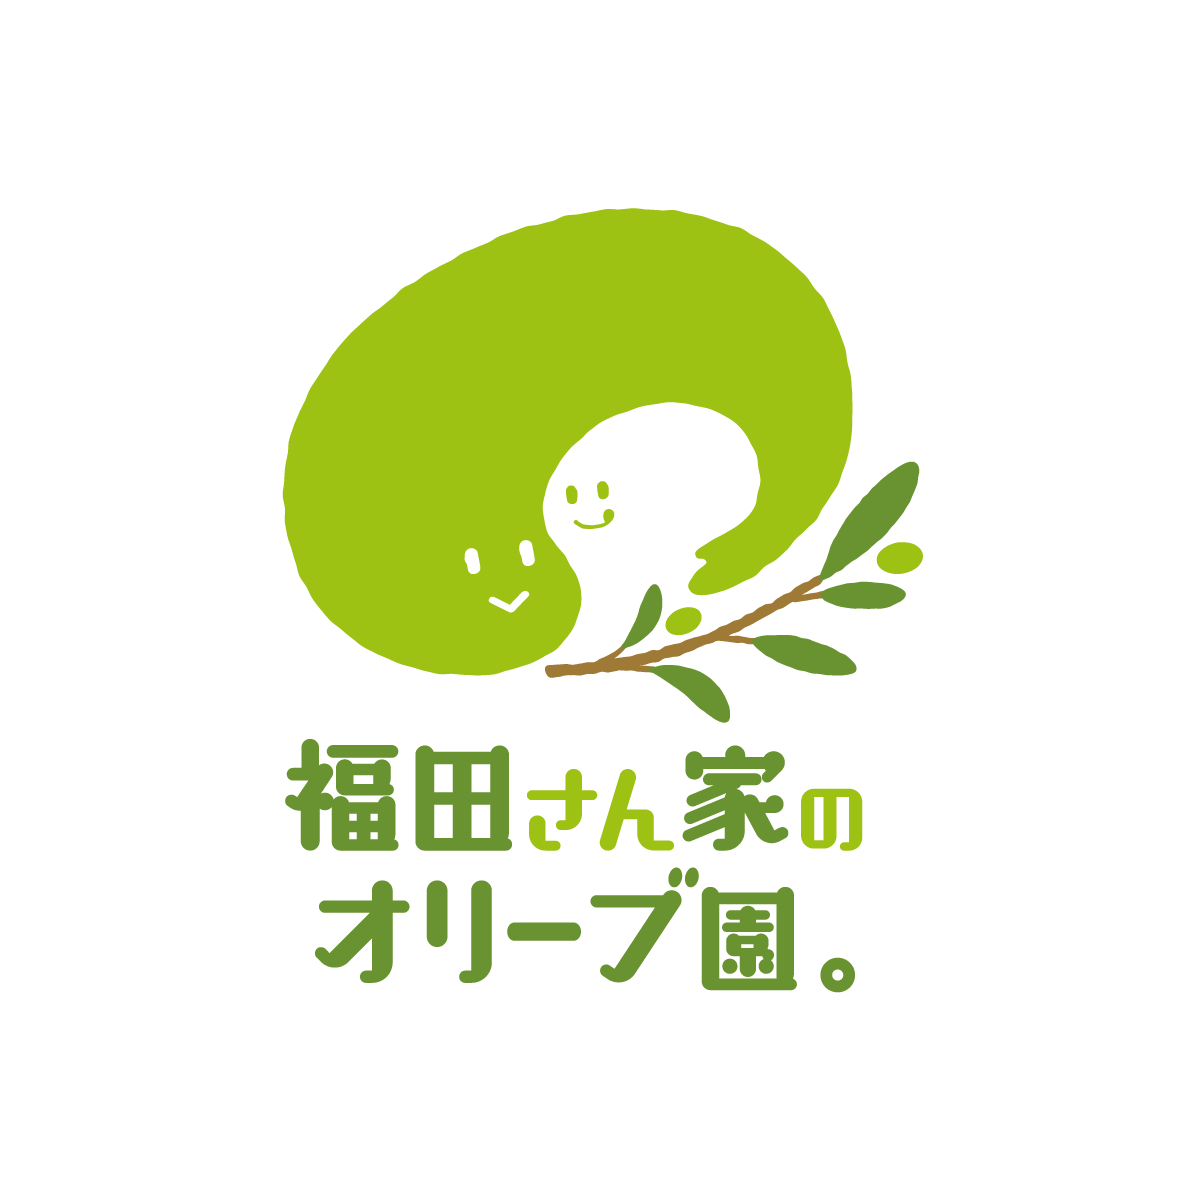 福田さん家のオリーブ園 ロゴ